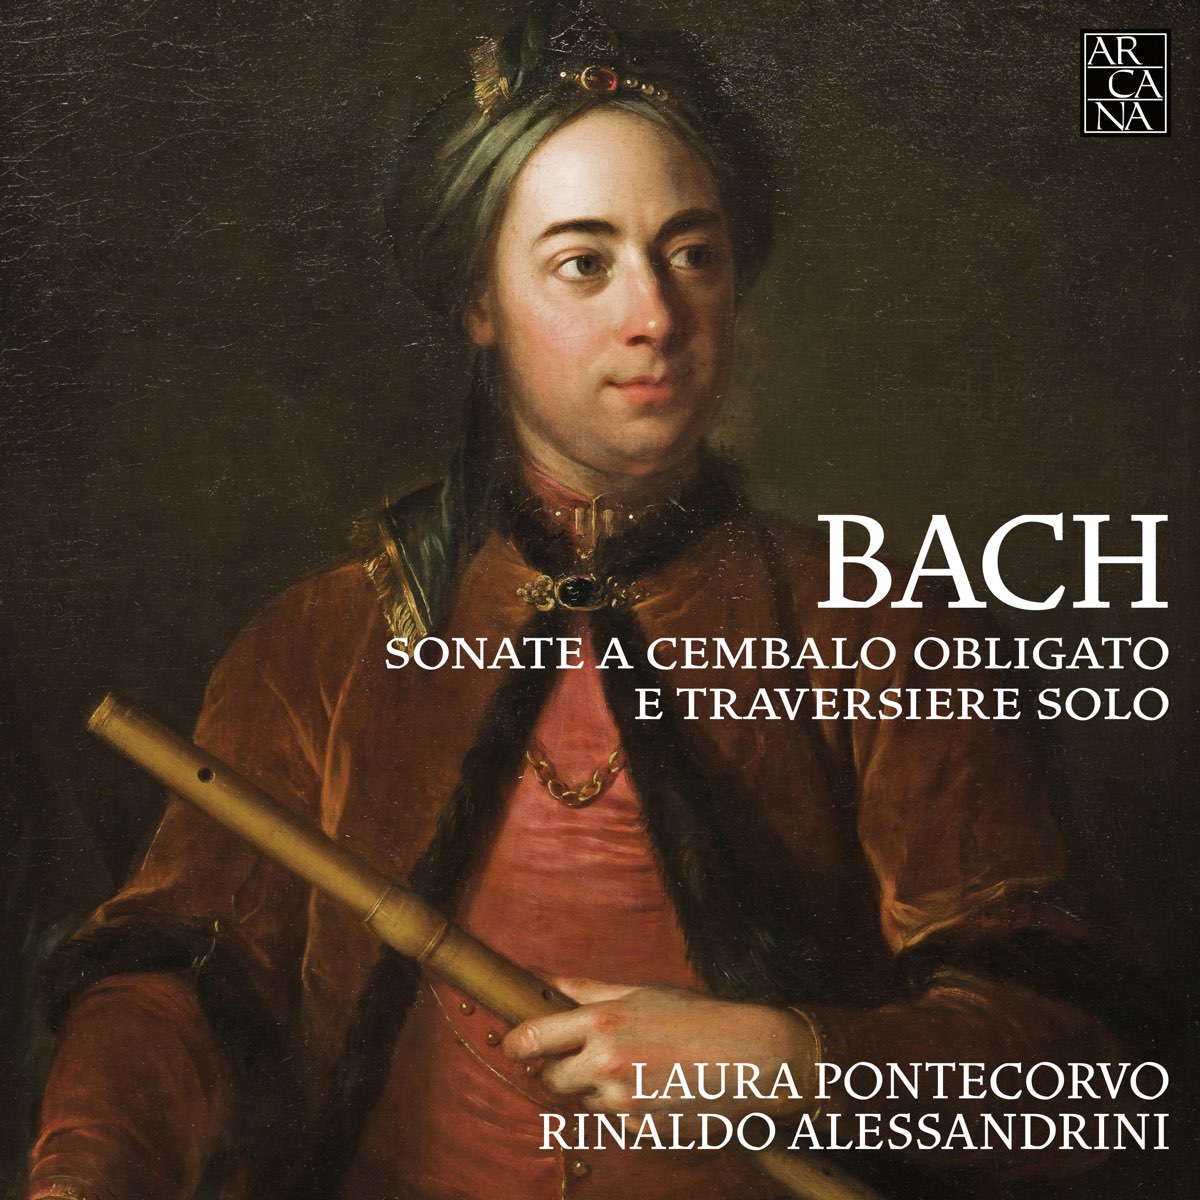 ‎Bach: Sonate a cembalo obligato e traversiere solo by Laura Pontecorvo ...